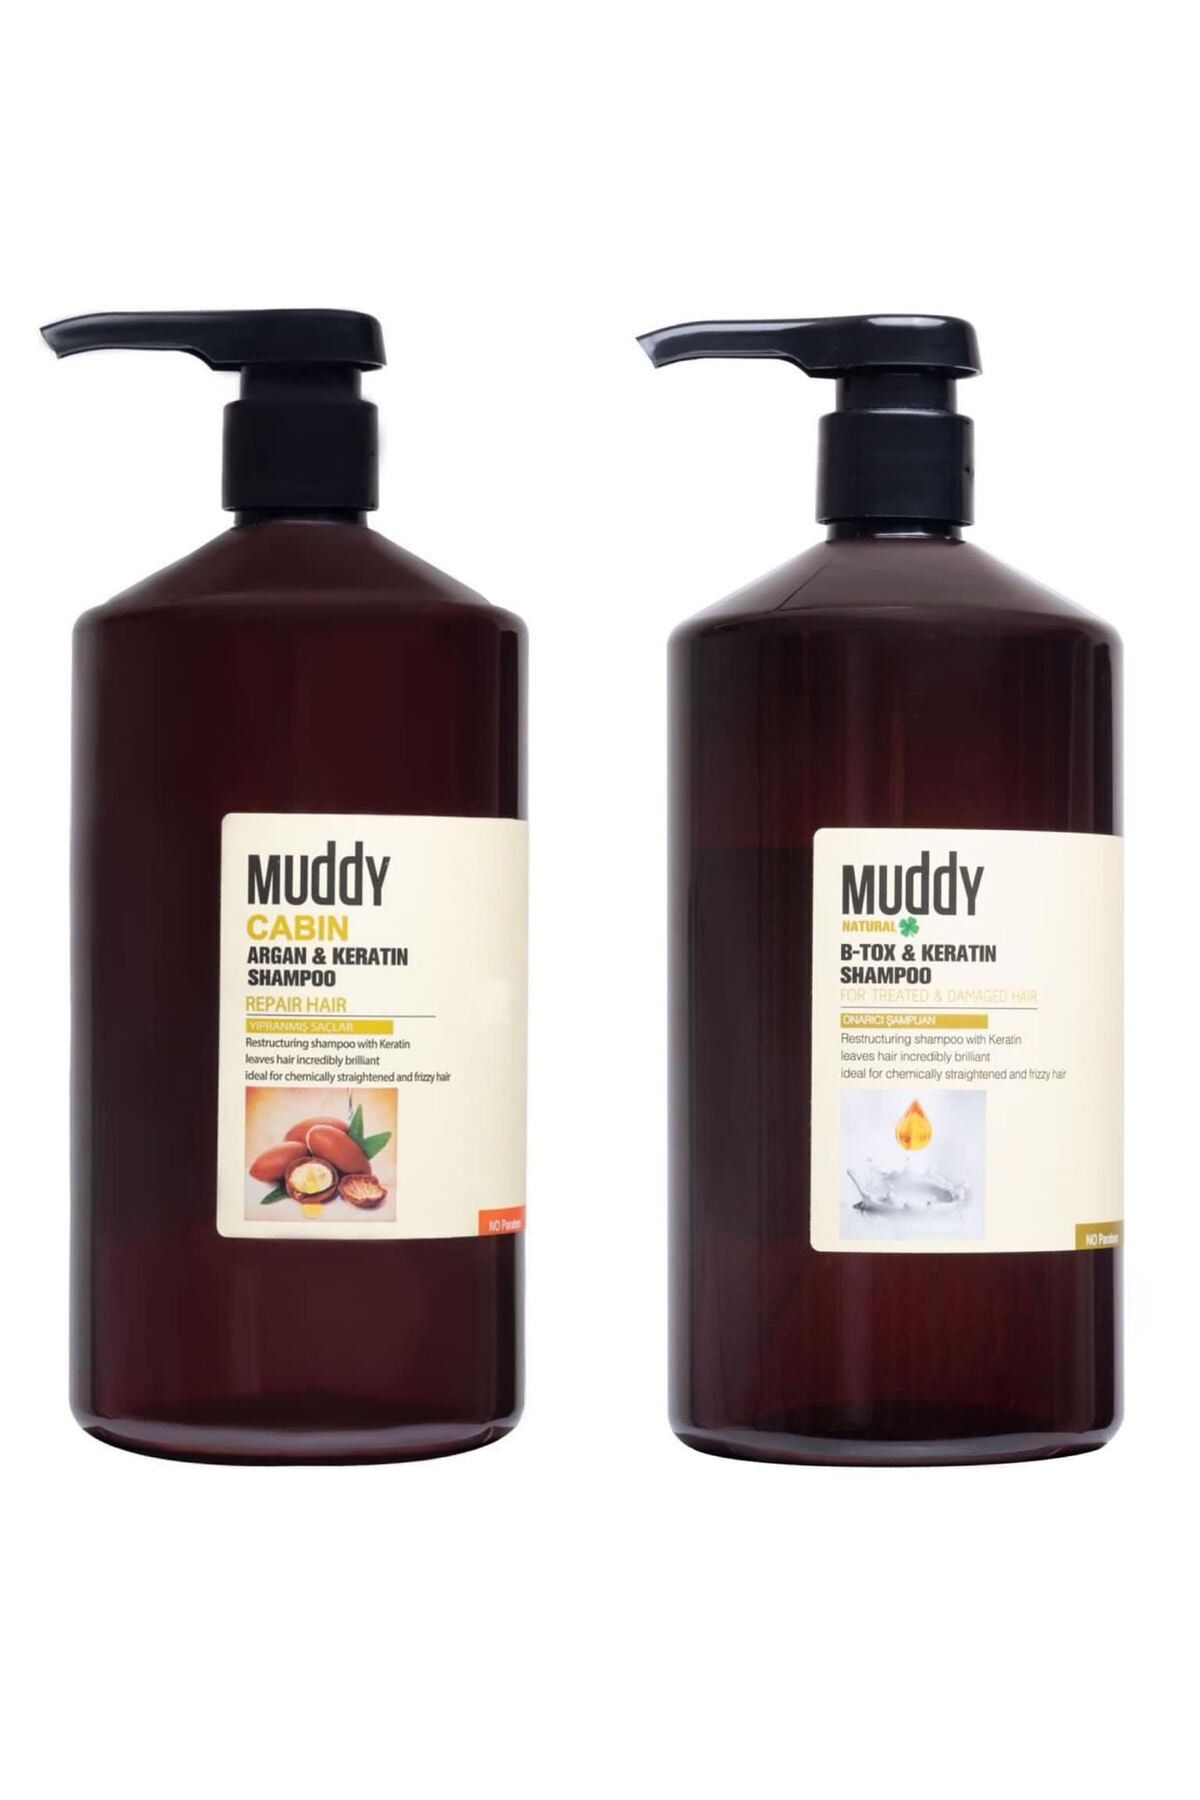 Muddy Argan&keratın Shampo0 1000 ml + B-tox&keratın Shampoo 1000 ml